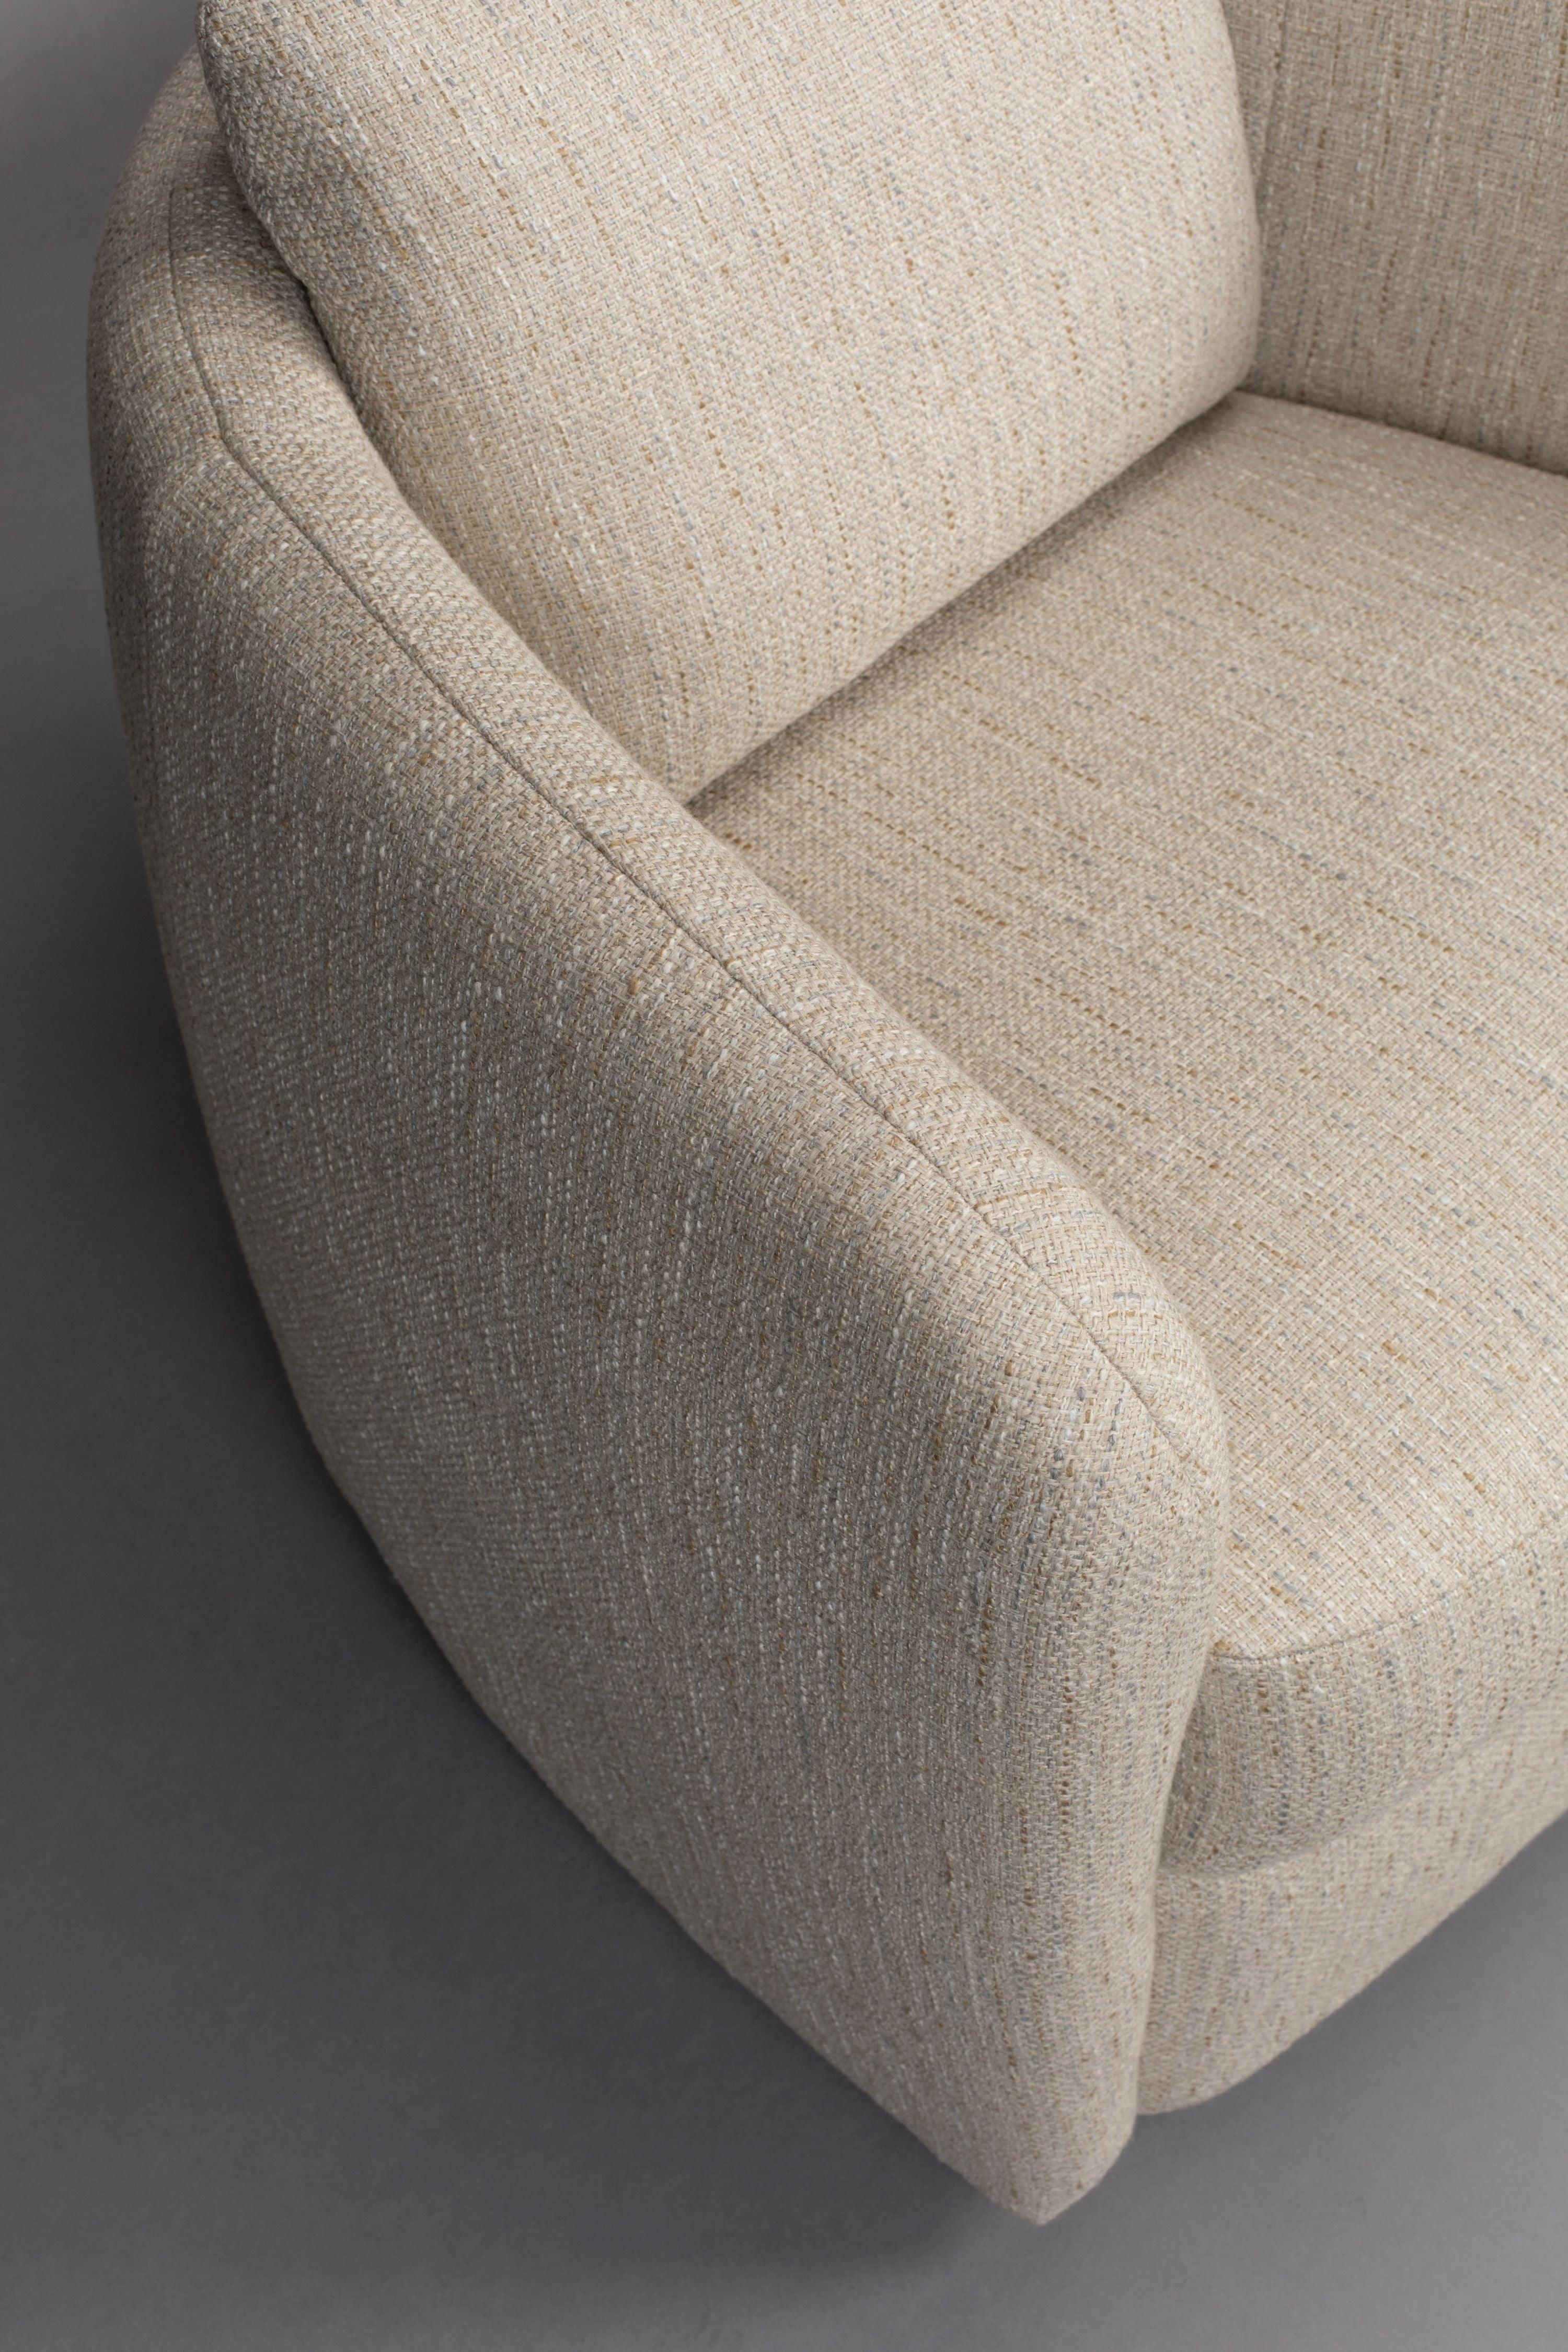 Boho Lounge Chair Sand Dutchbone    Eye on Design